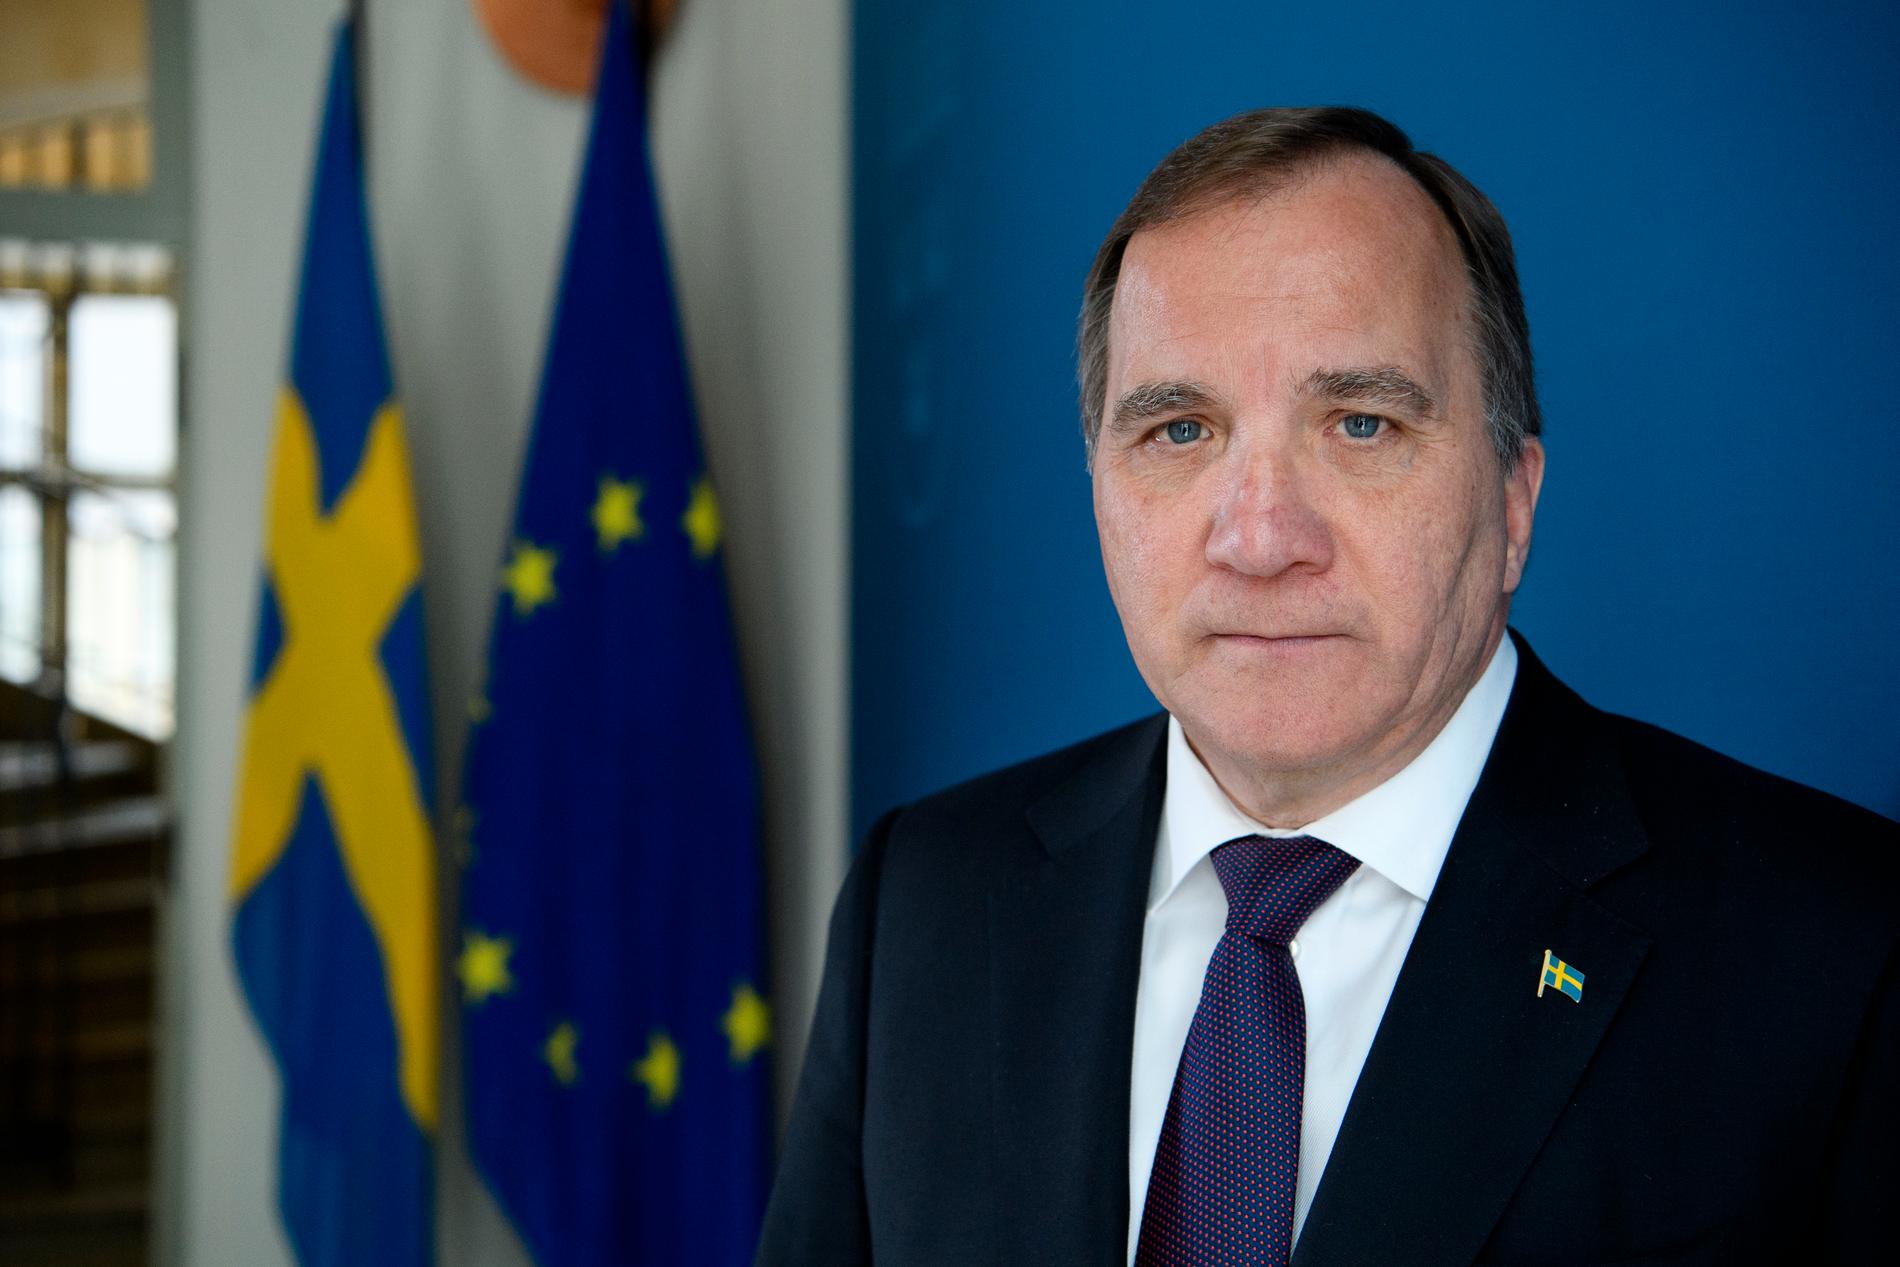 Statsminister Stefan Löfven vill tillsätta en coronakommission när krisen är över för att gå igenom vad som fungerade och fallerade.